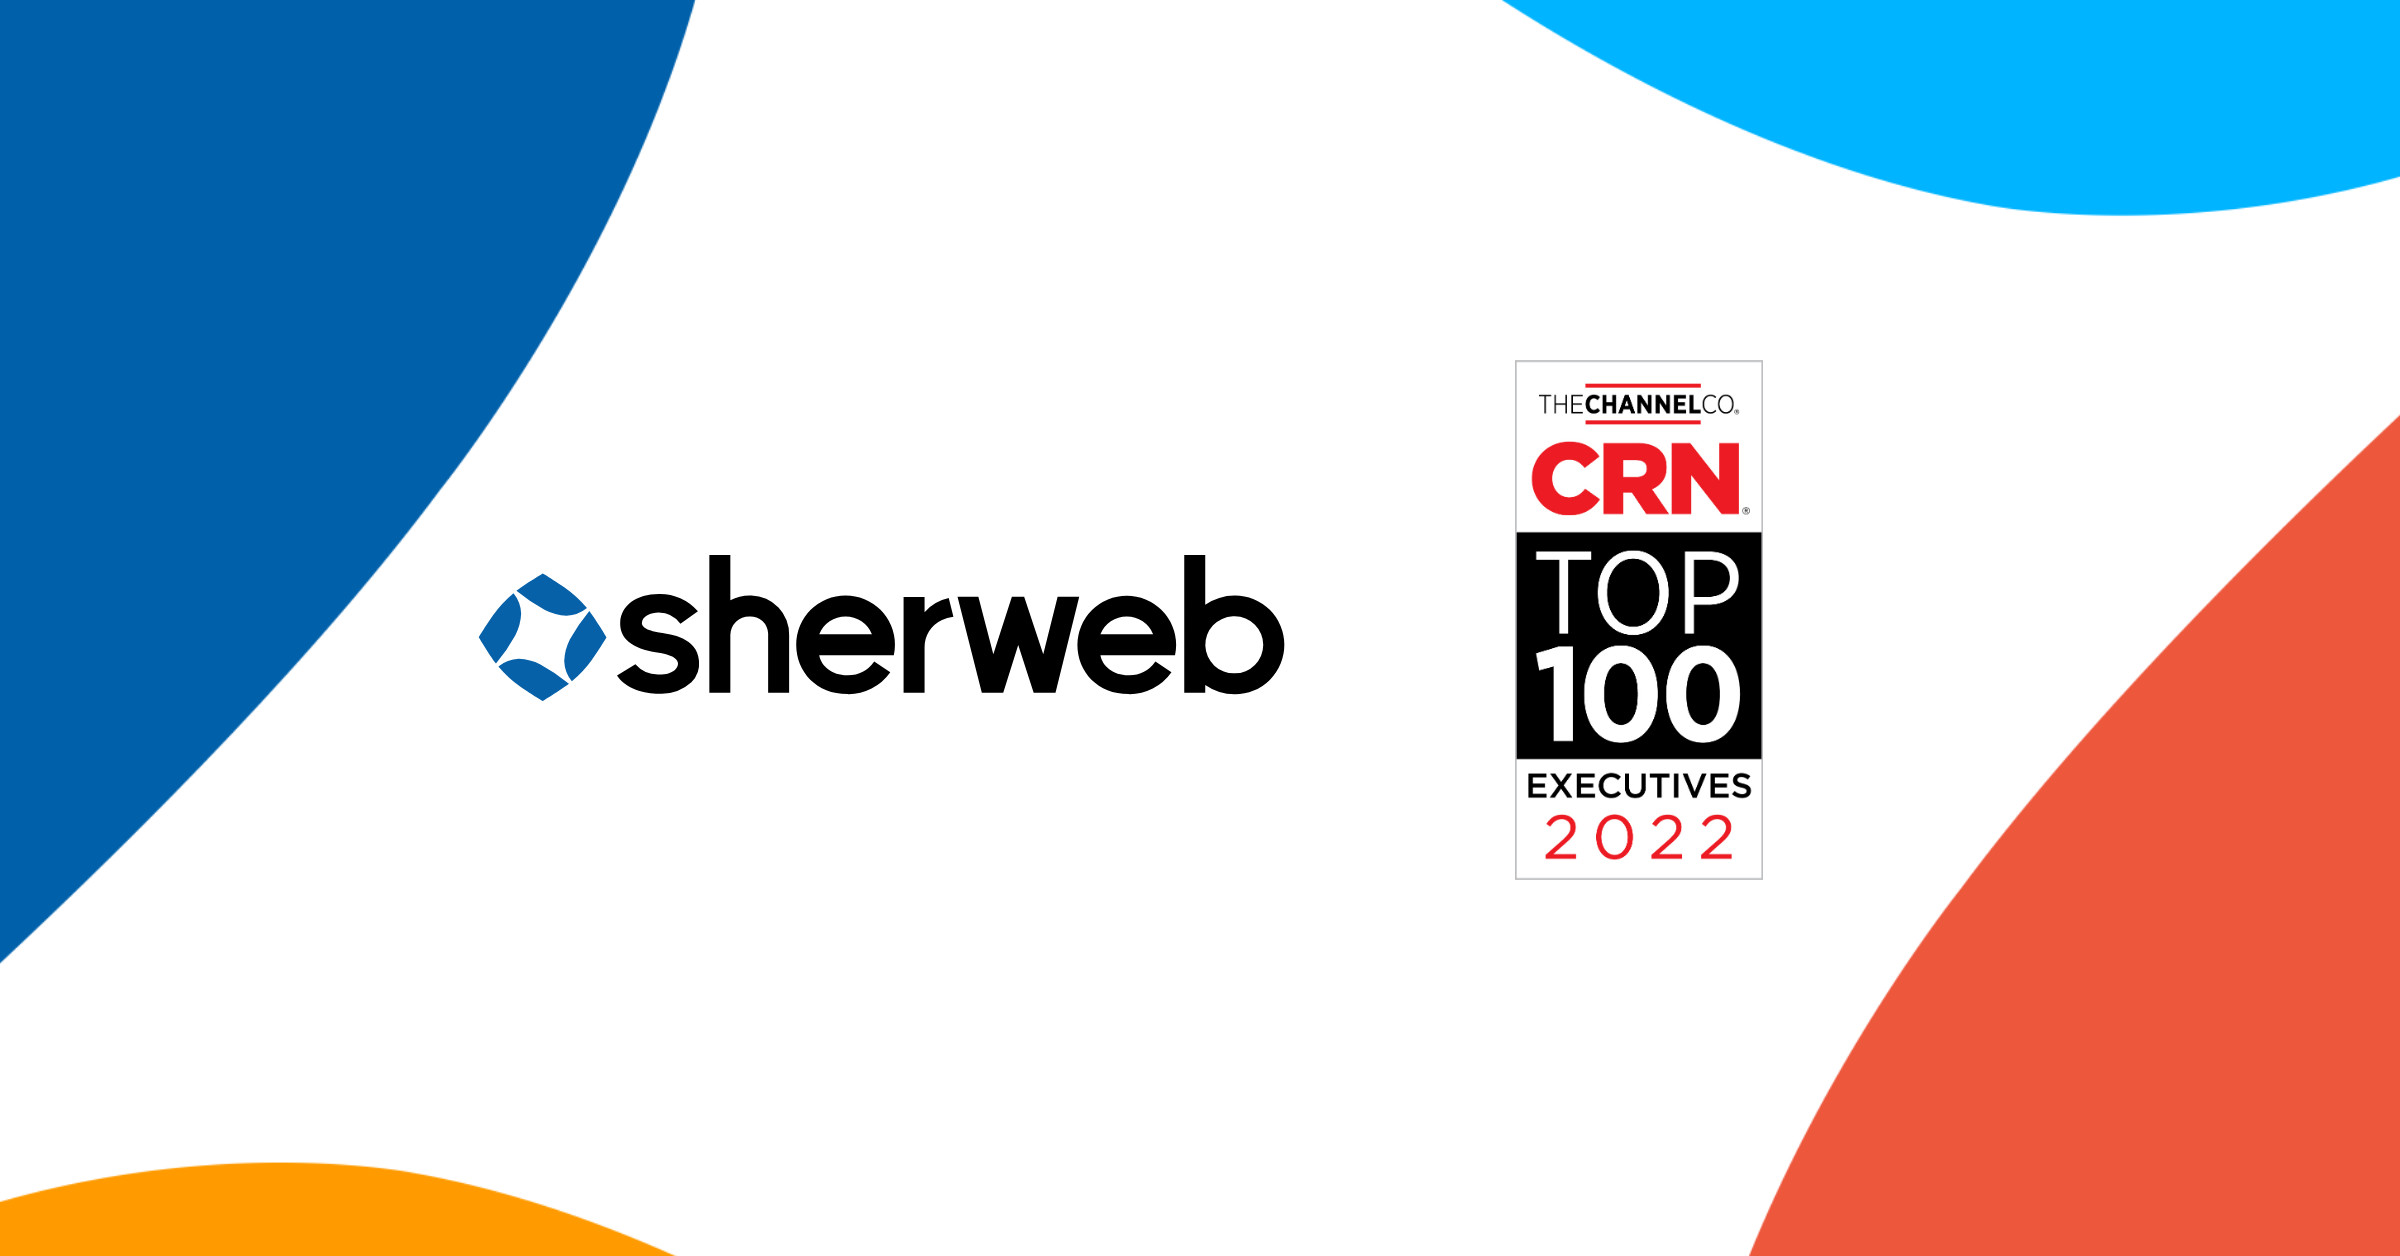 CRN nomme les fondateurs de Sherweb dans sa liste des 25 principaux innovateurs de 2022